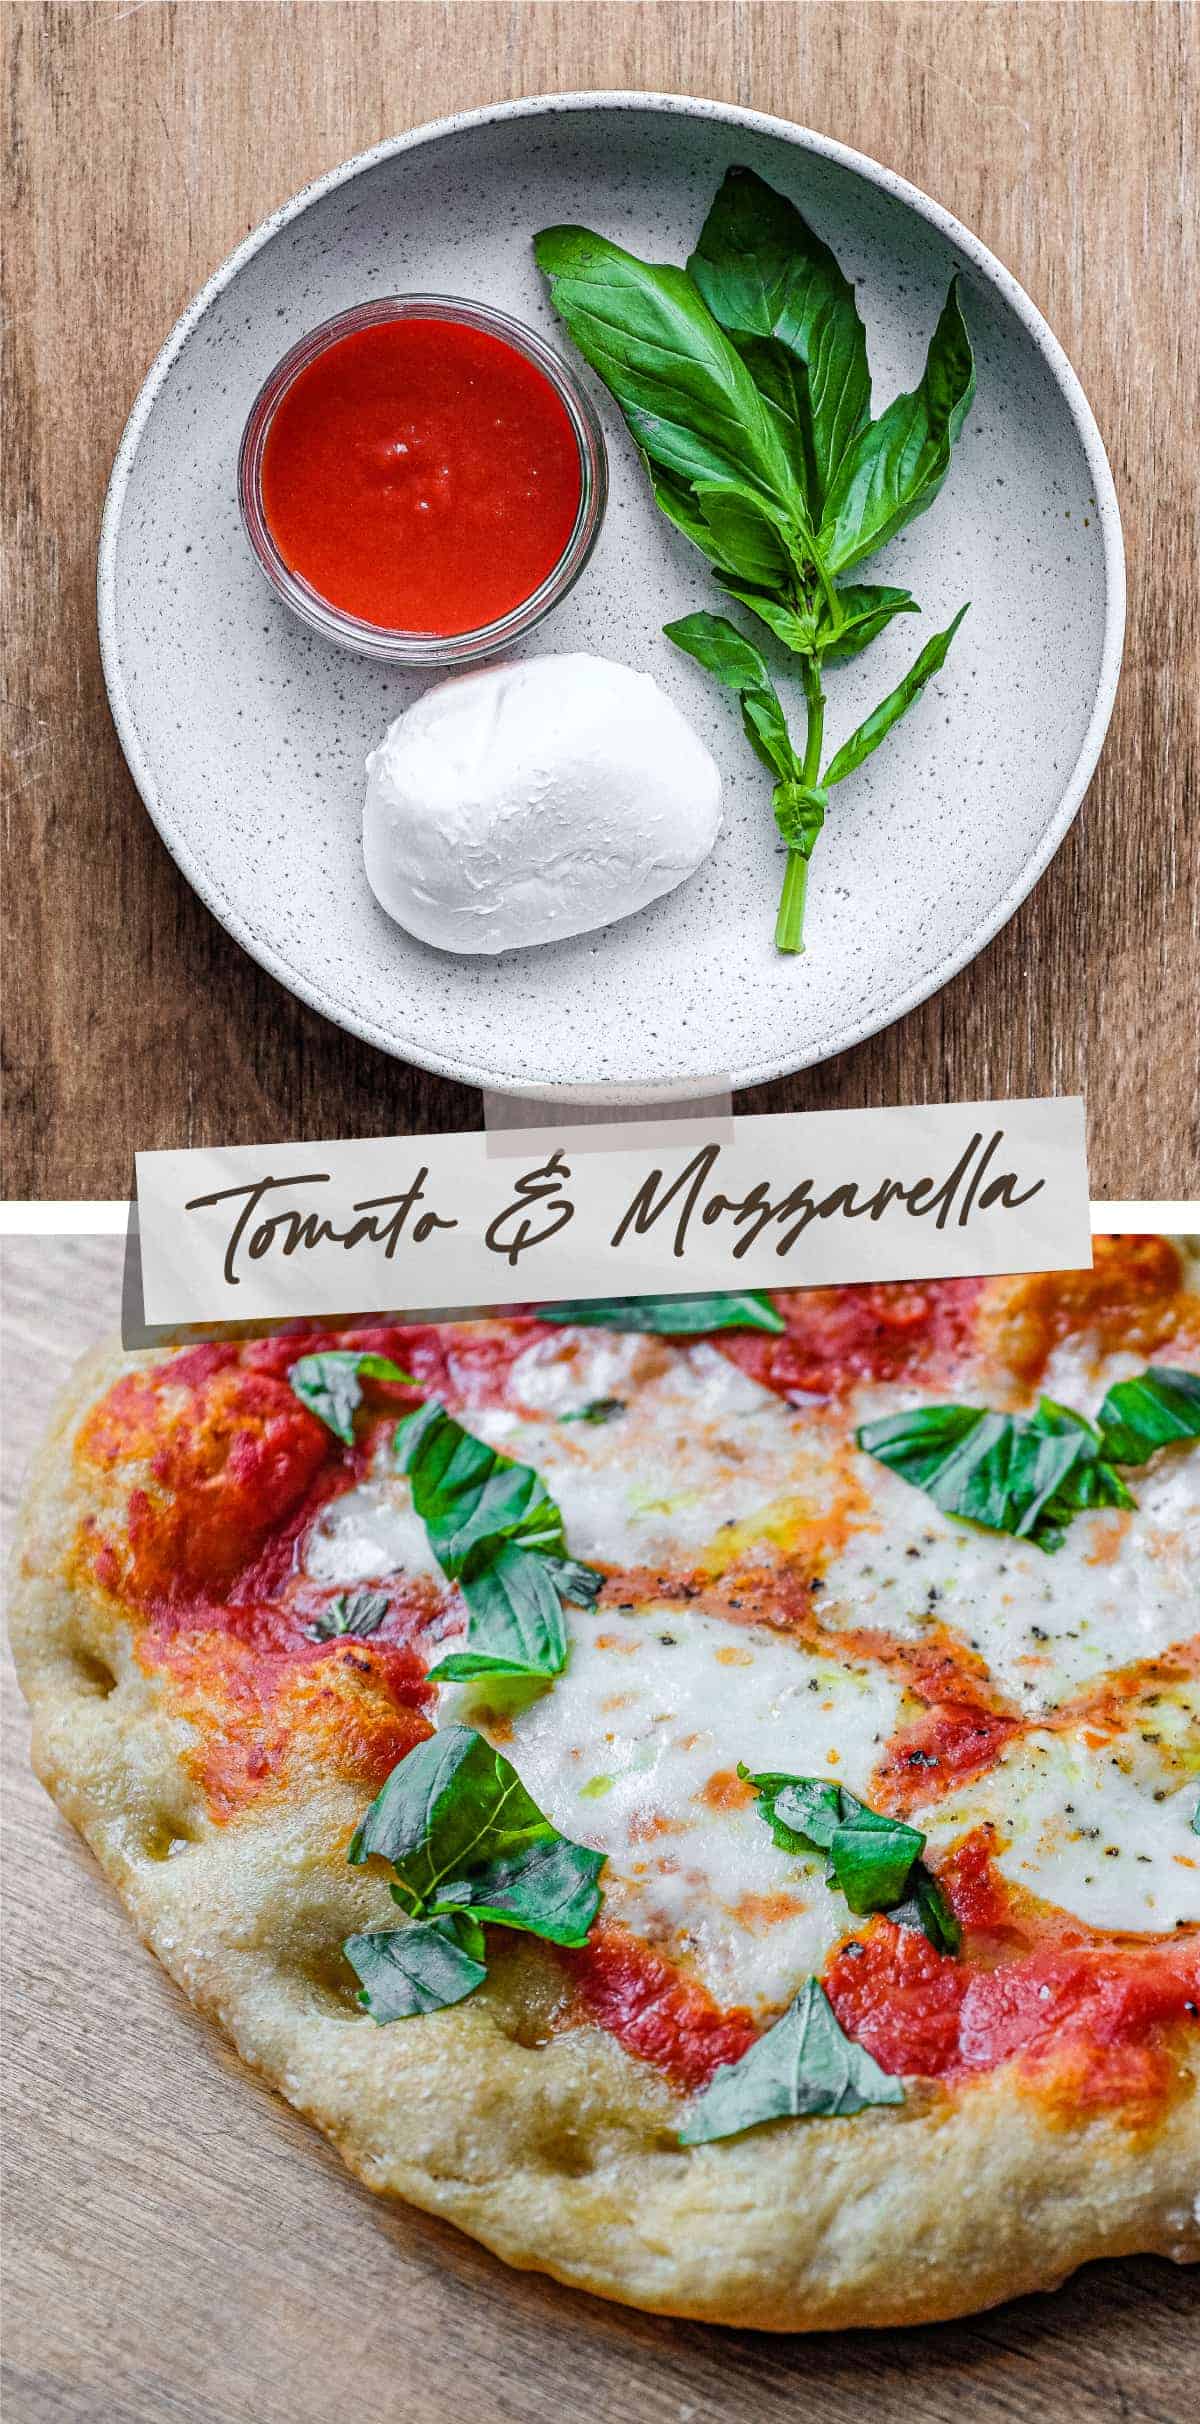 Top Picture: A bowl with mozzarella, tomato passata and fresh basil. Bottom Picture: A tomato, Mozzarella and Basil Pinsa.